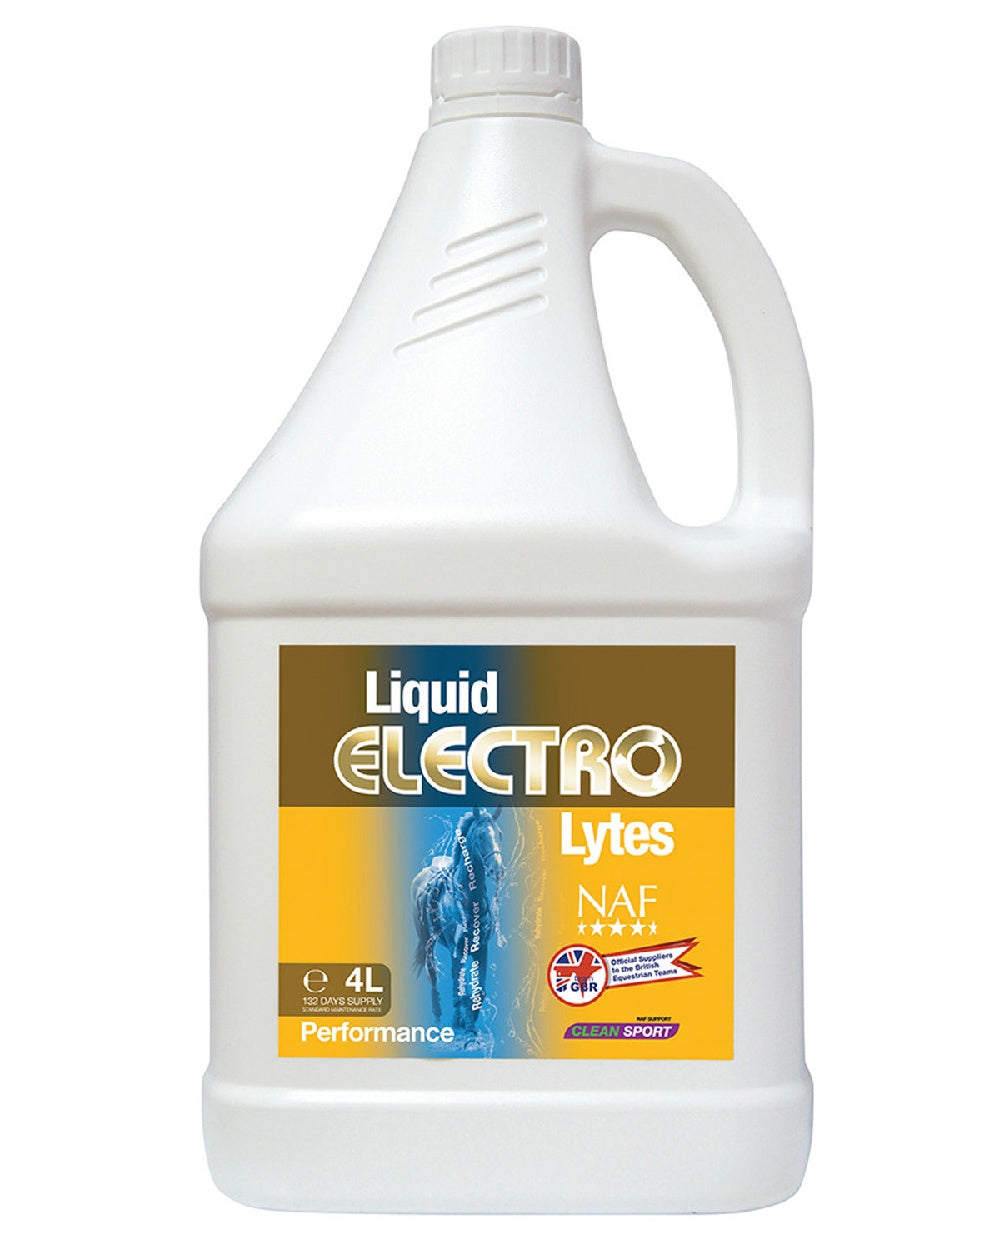 NAF Liquid Electro Lytes 1lt on white background